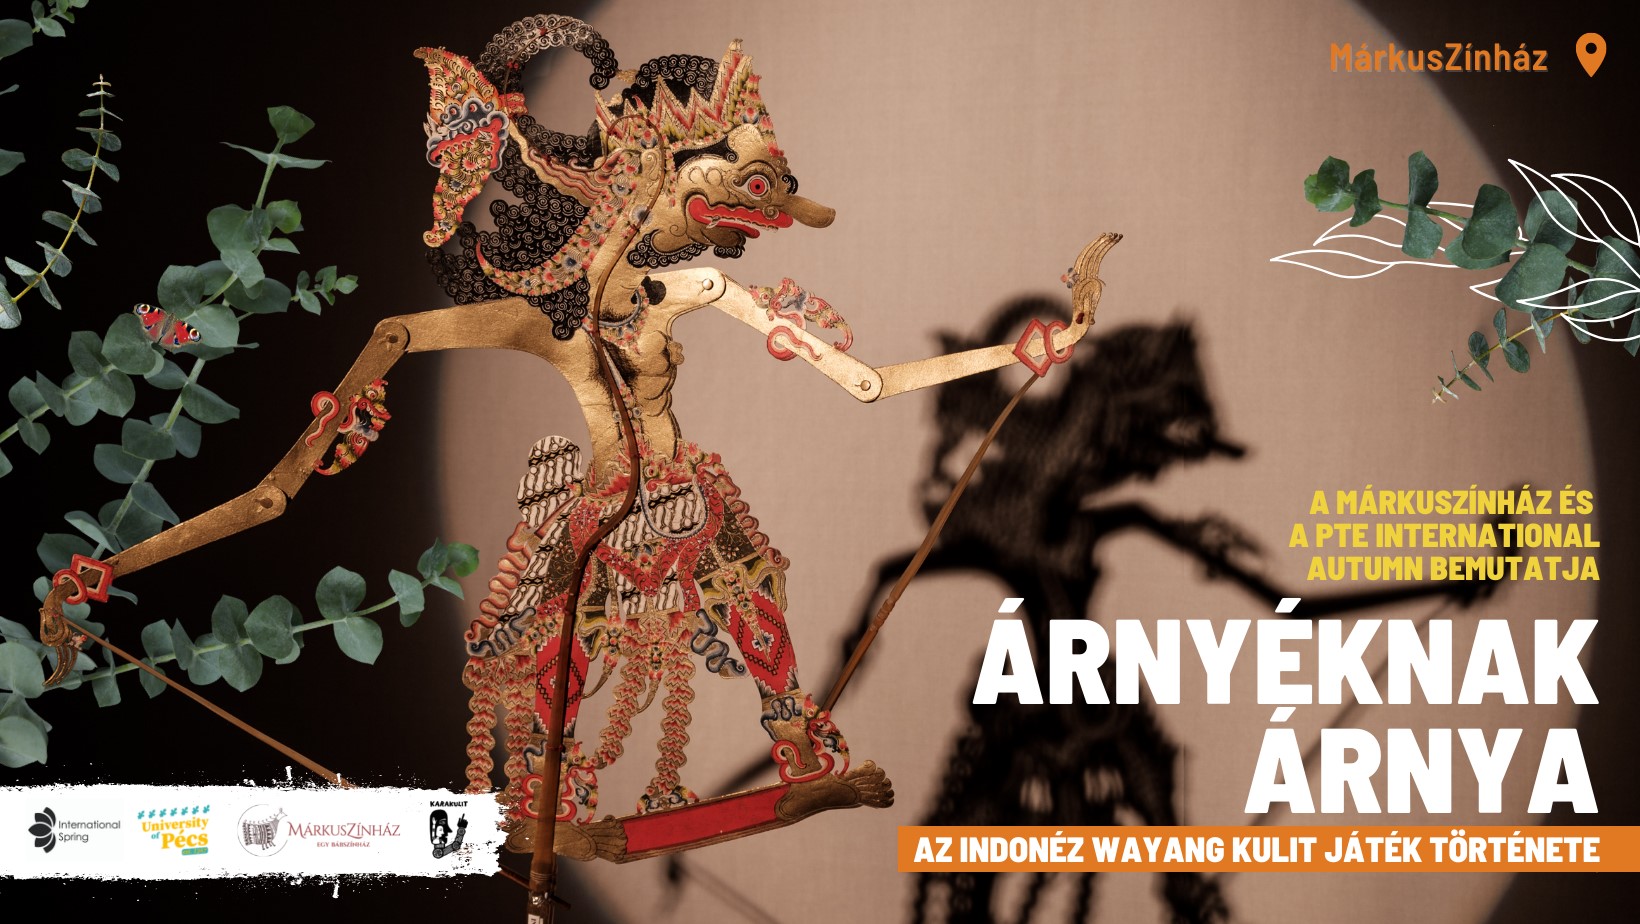 Árnyéknak Árnya - Az indonéz wayang kulit játék története